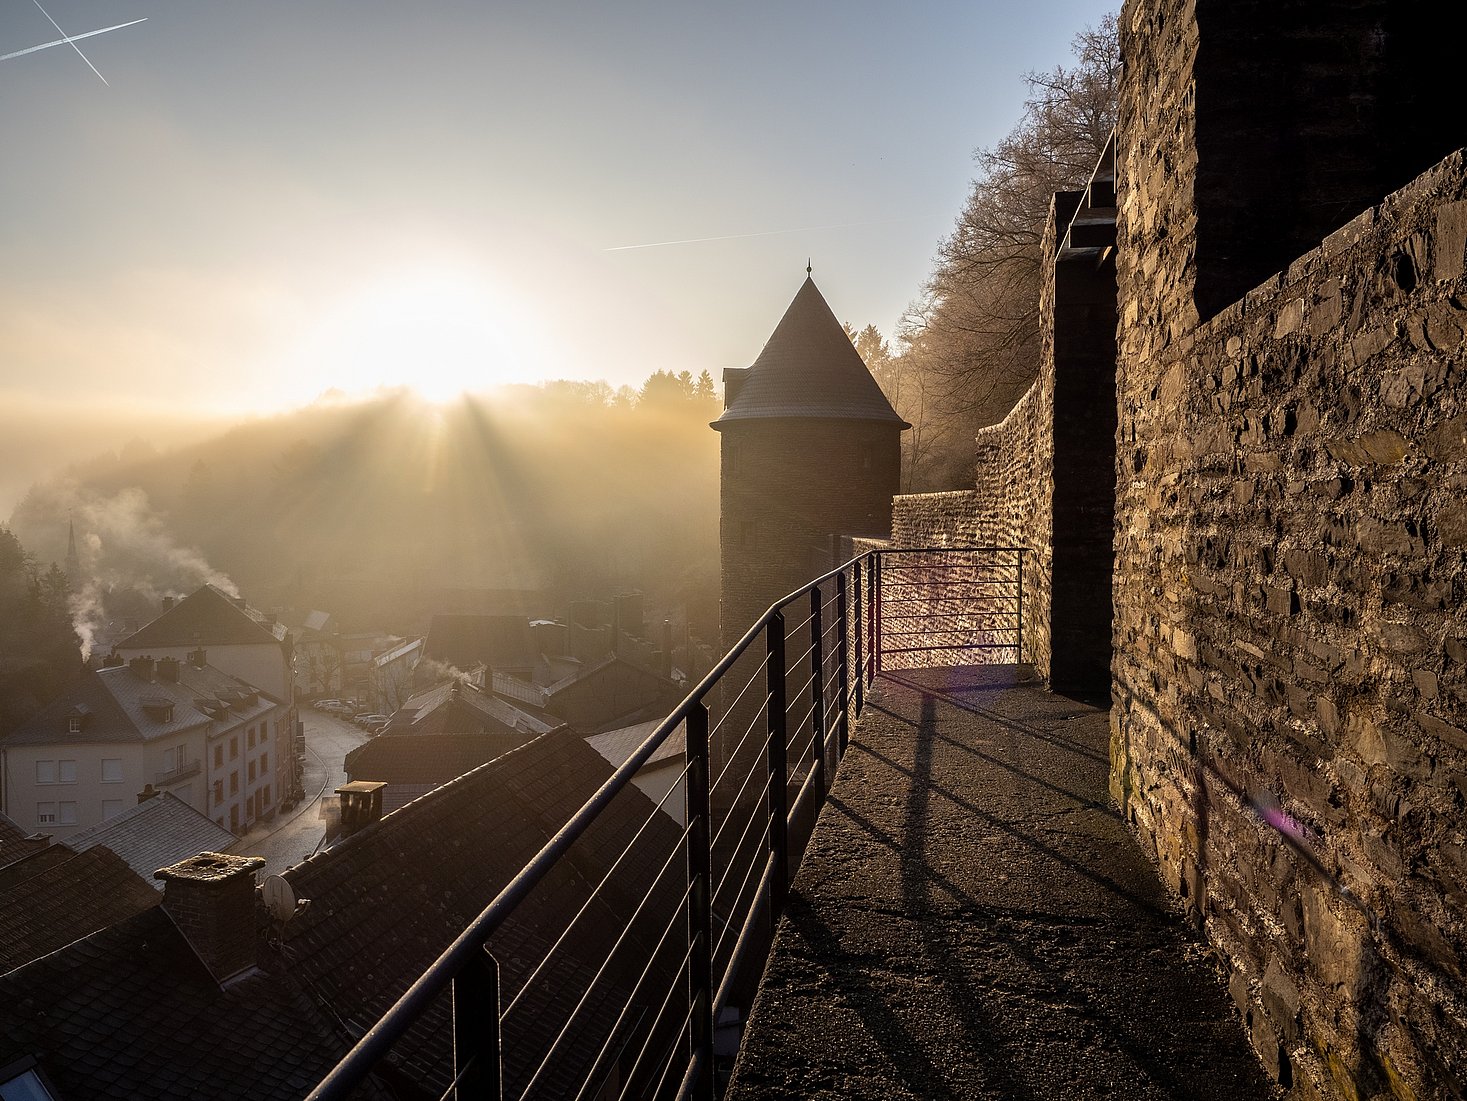 Eine Aufnahme, die an einer Festungsmauer aufgenommen wurde. Die aufgehende Sonne wirft ihr Licht auf die Burg und betont den kleinen Turm gegen den blauen Himmel.